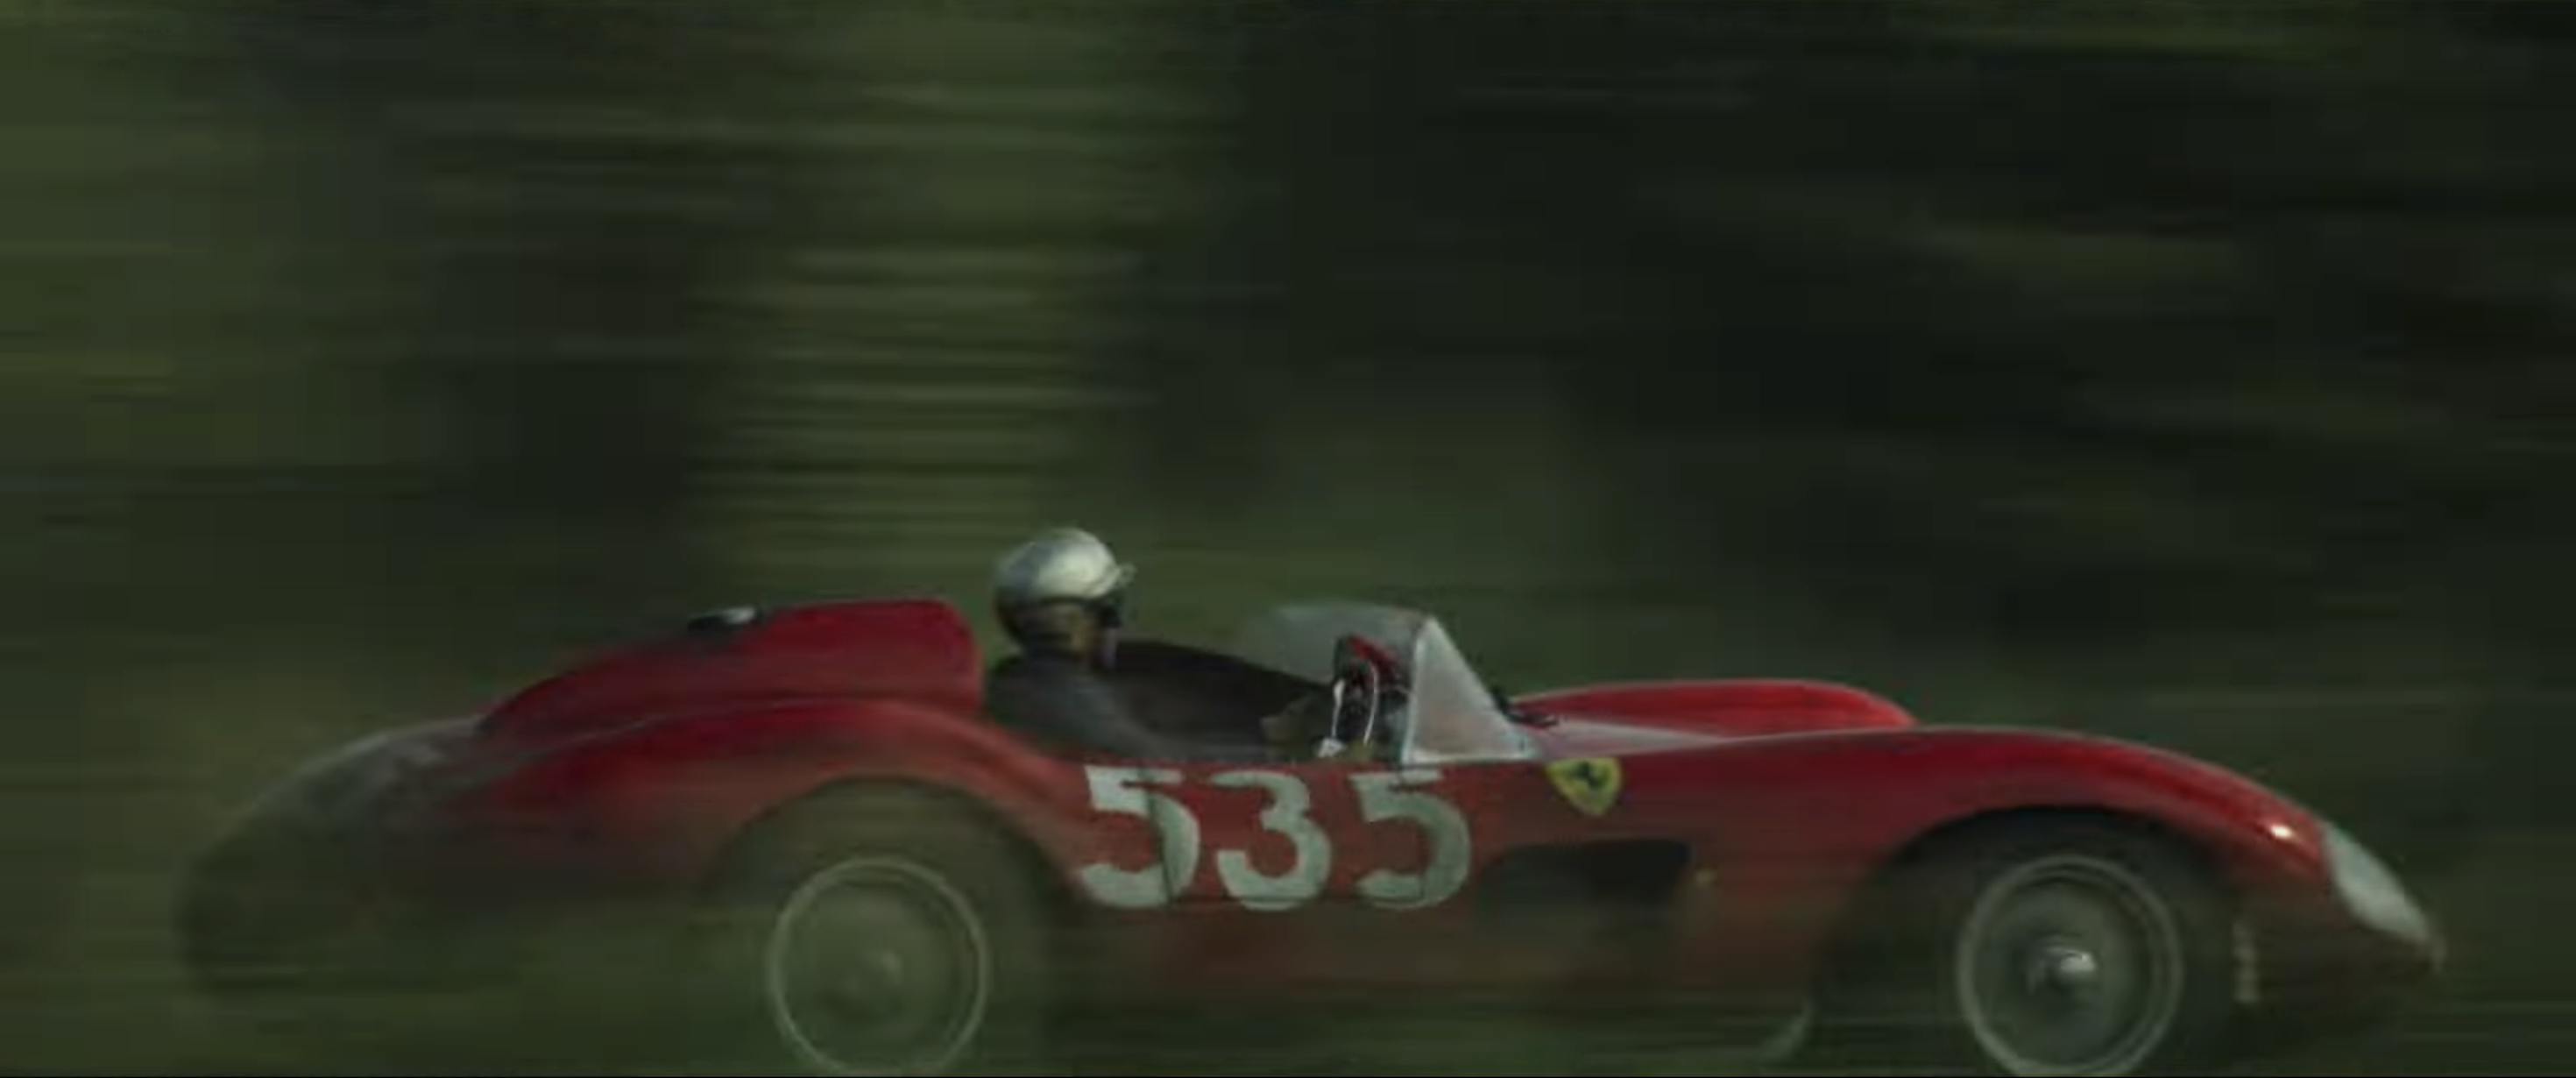 Ferrari film racing action still side pan